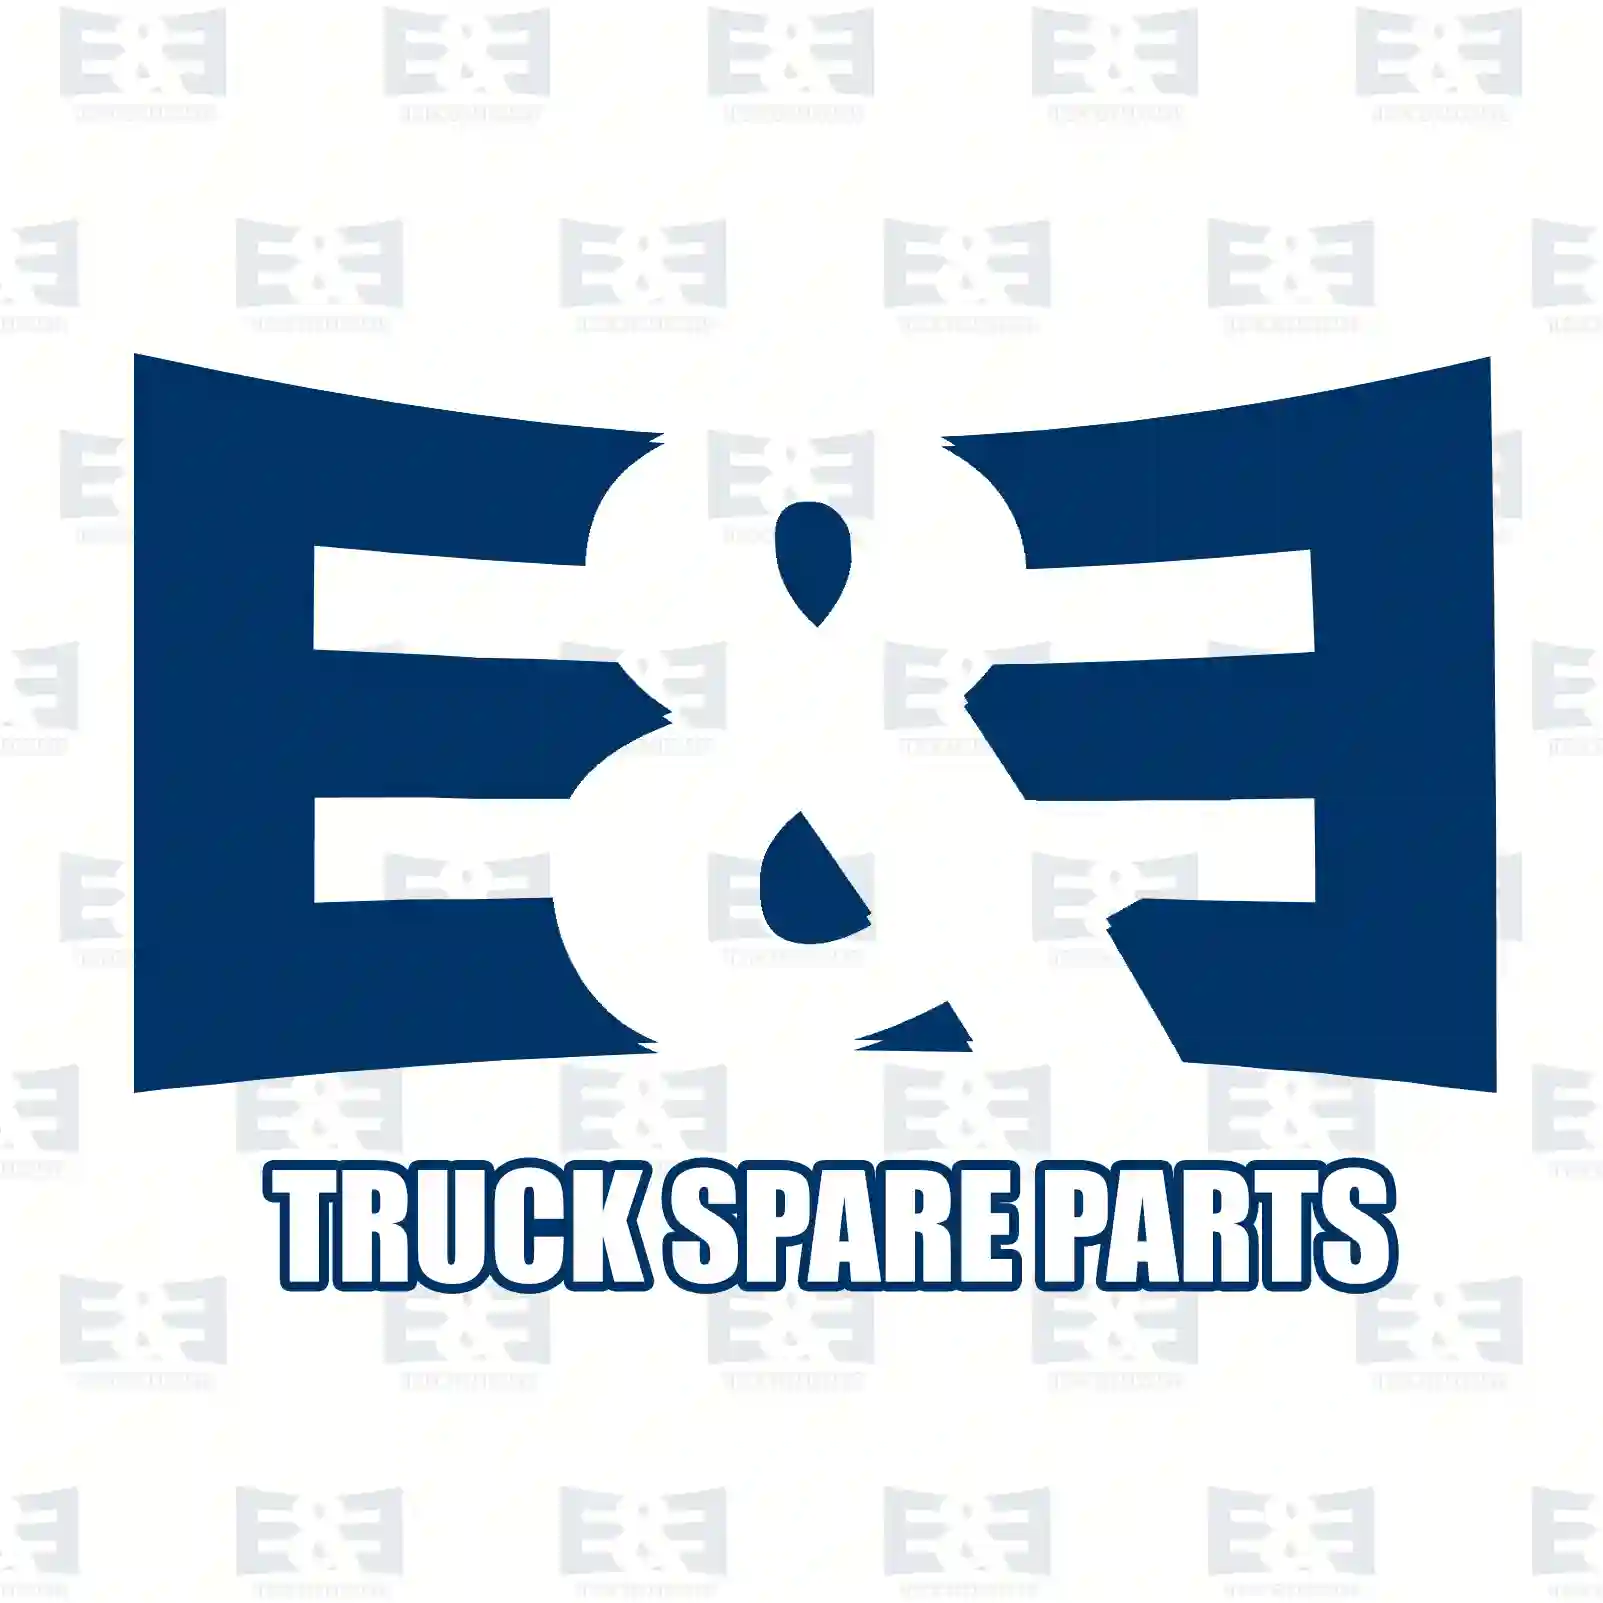 Shut-off valve, 2E2278489, 0022606257, 0022602957, 0022603057, 0022606257, ZG30608-0008 ||  2E2278489 E&E Truck Spare Parts | Truck Spare Parts, Auotomotive Spare Parts Shut-off valve, 2E2278489, 0022606257, 0022602957, 0022603057, 0022606257, ZG30608-0008 ||  2E2278489 E&E Truck Spare Parts | Truck Spare Parts, Auotomotive Spare Parts